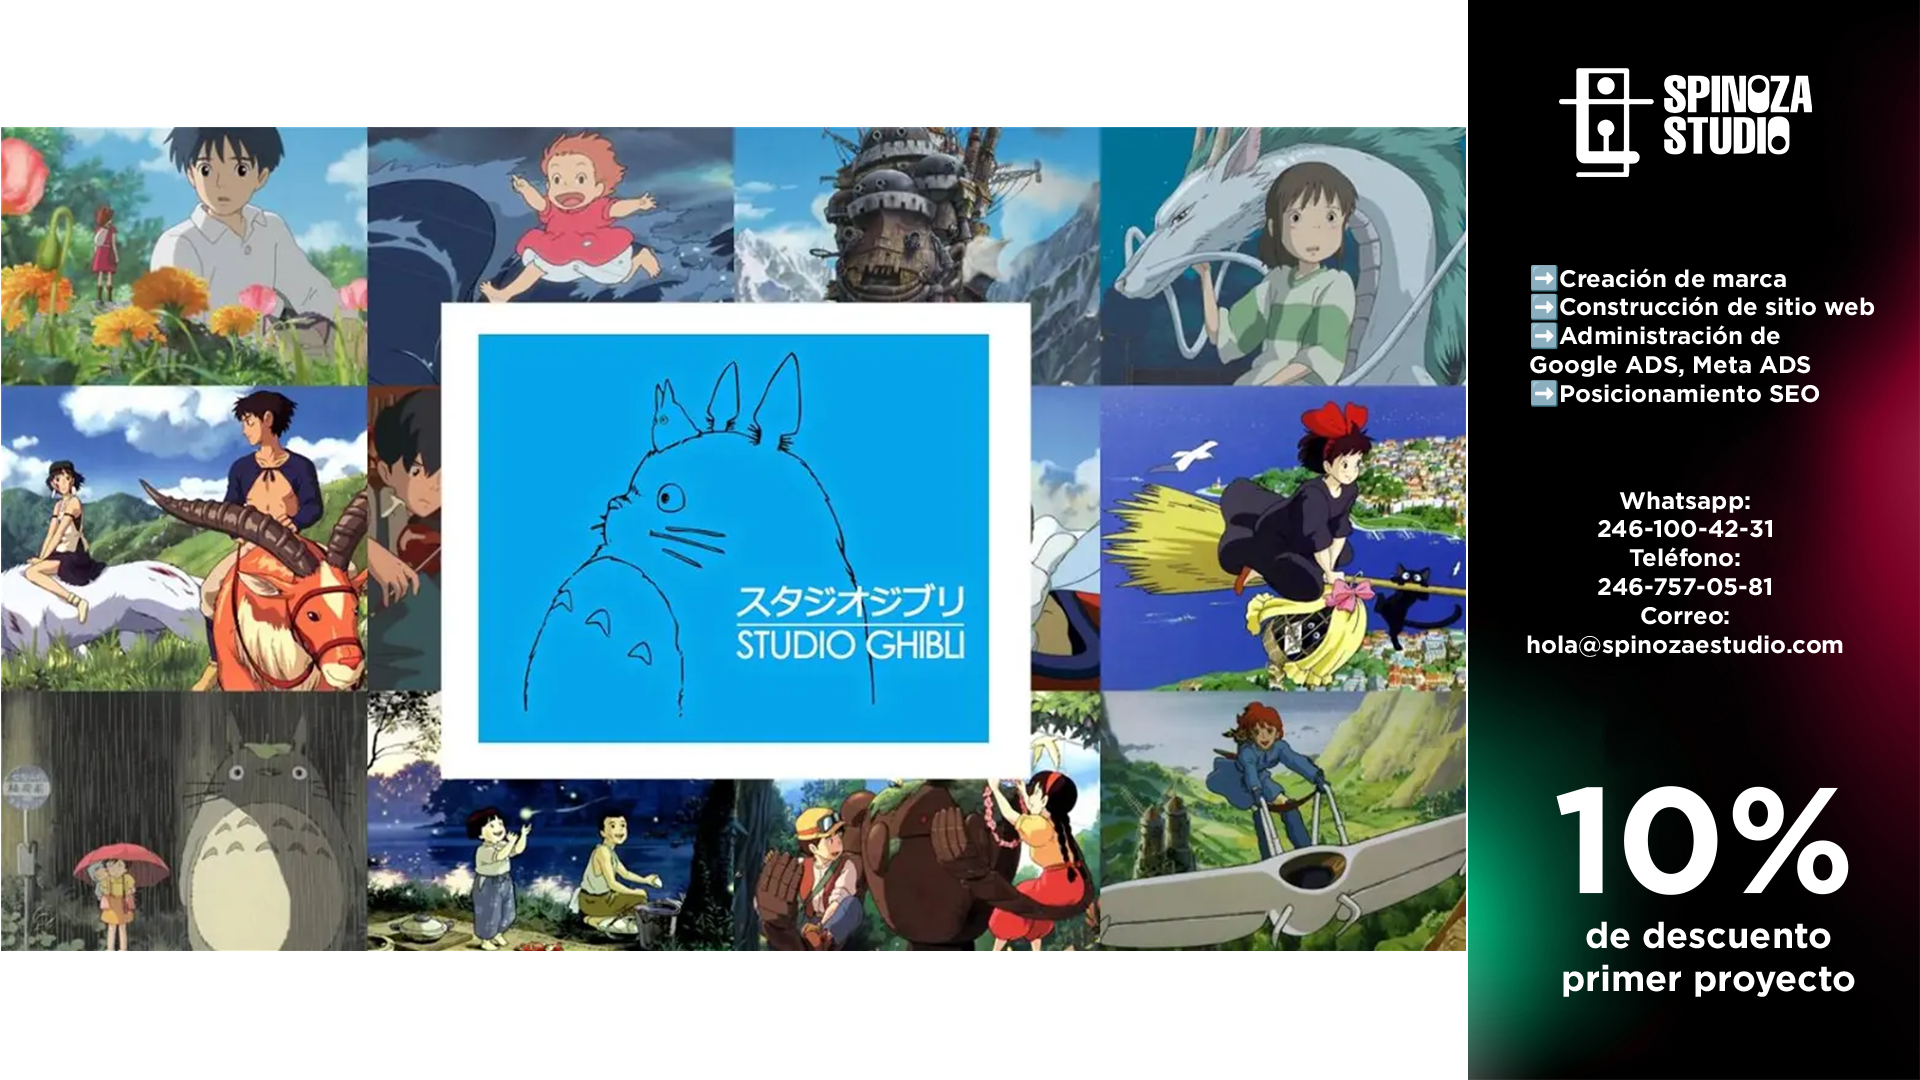 Las 5 Películas Más Rentables de Estudio Ghibli